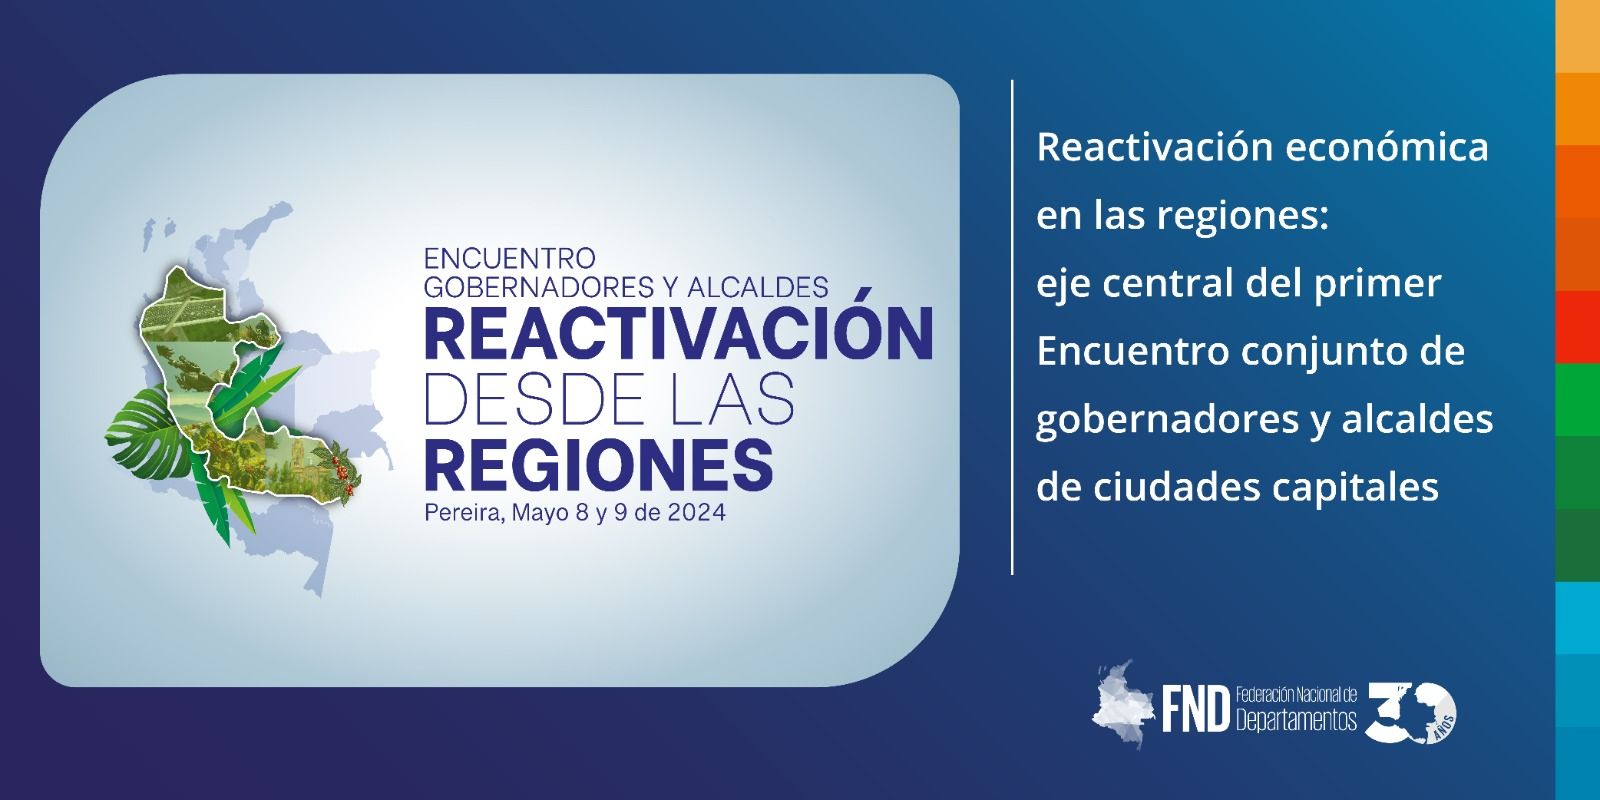 Reactivación económica en las regiones: eje central del primer Encuentro conjunto de gobernadores y alcaldes de ciudades capitales